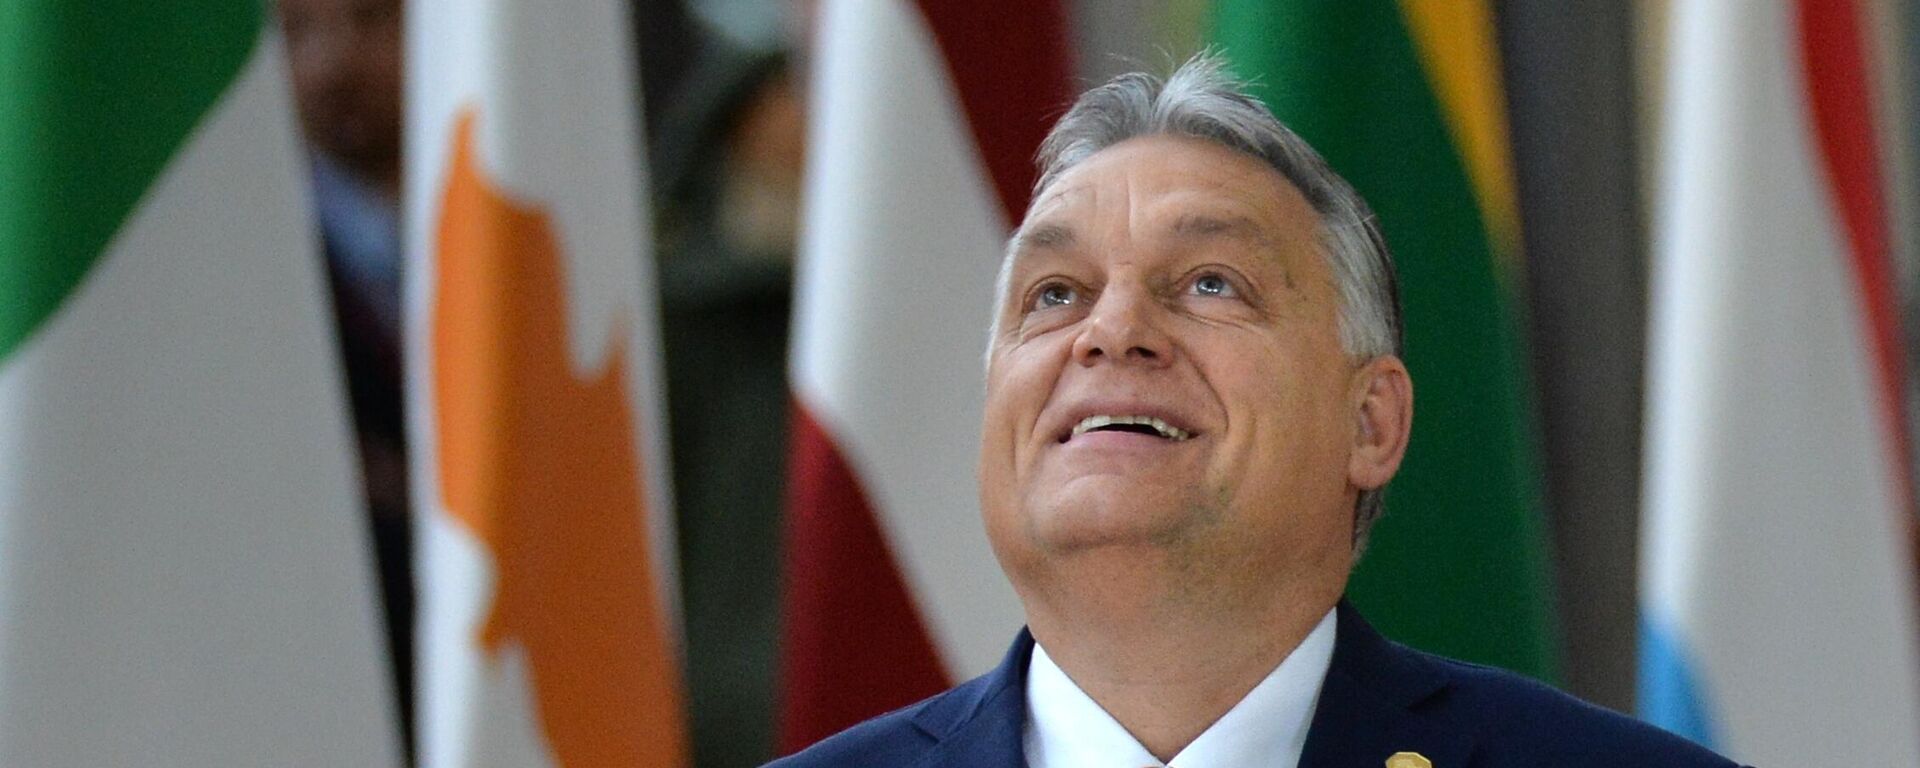 Премьер-министр Венгрии Виктор Орбан на саммите глав государств и правительств Евросоюза в Брюсселе - Sputnik Латвия, 1920, 04.04.2022